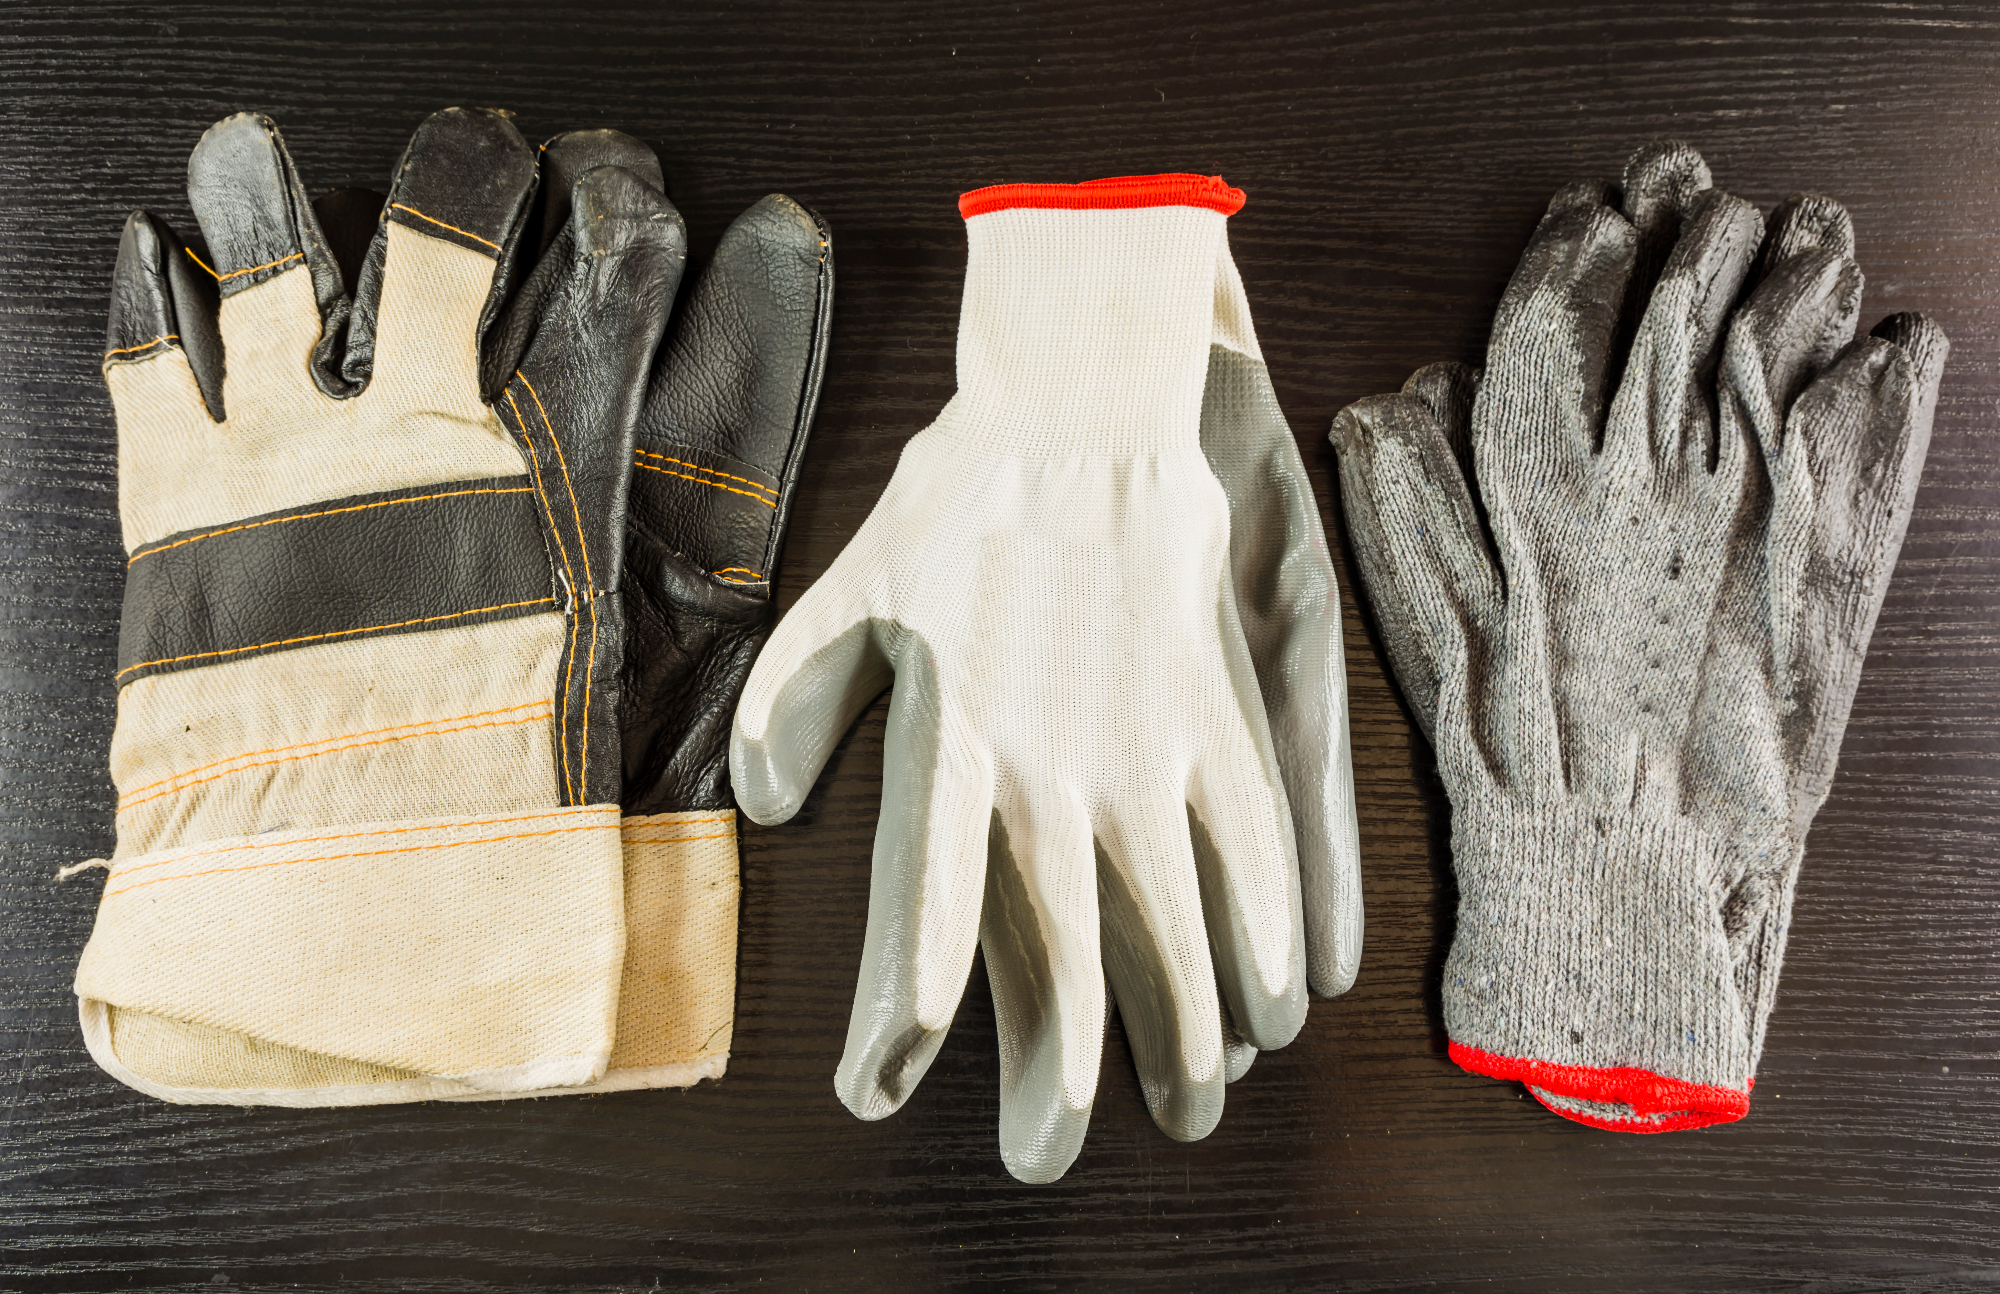 Zaščitne rokavice so zelo pomembne pri marsikaterem delom